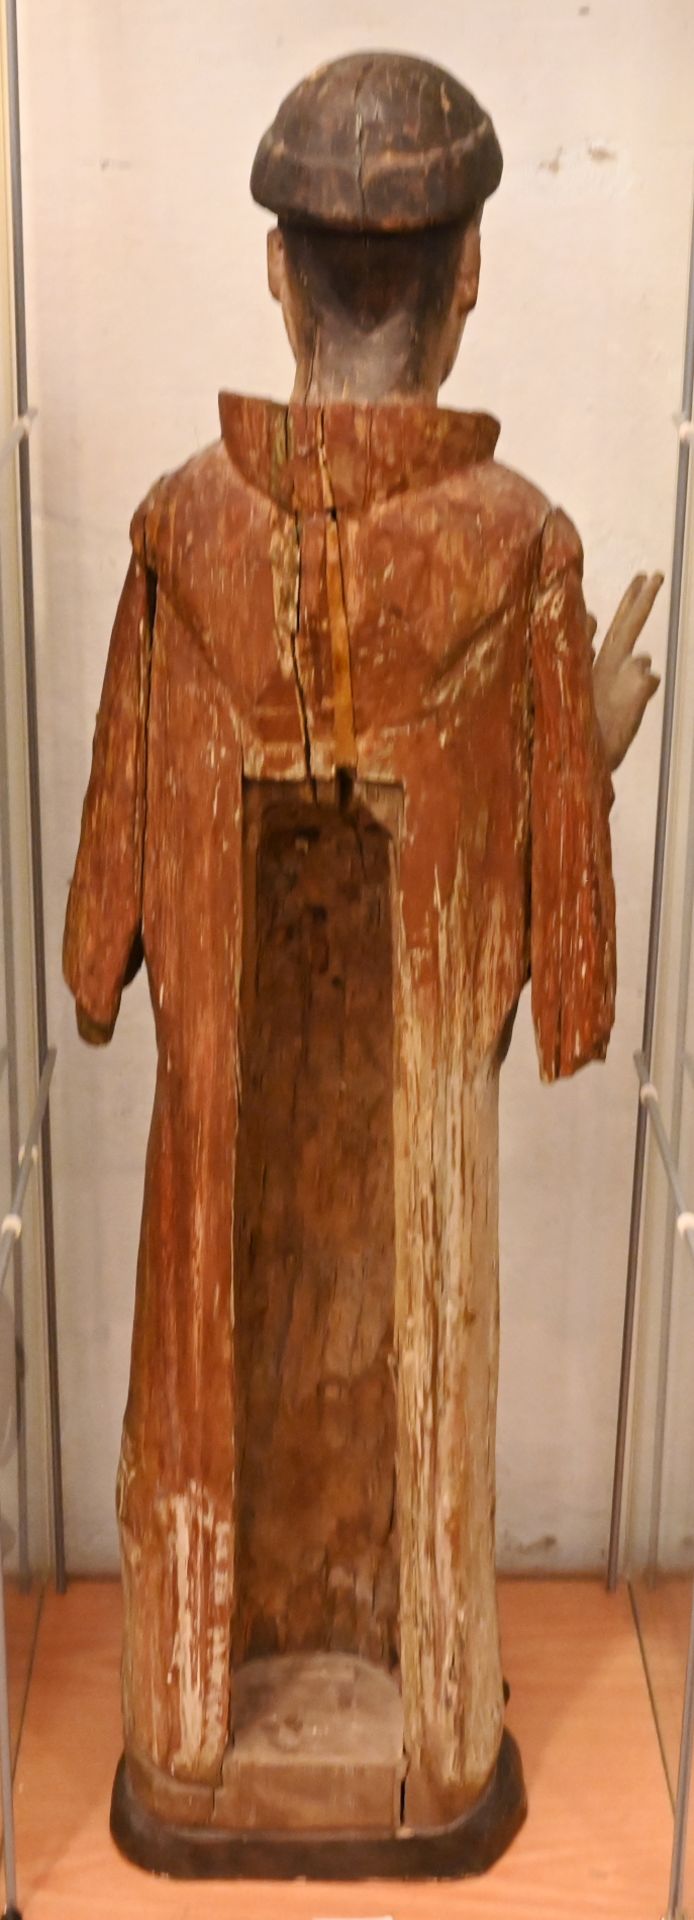 1 Holzfigur "Heiliger Stephanus" farbig gefasst, lt. beiliegender Beschreibung romanisch mit Ergänzu - Bild 3 aus 4